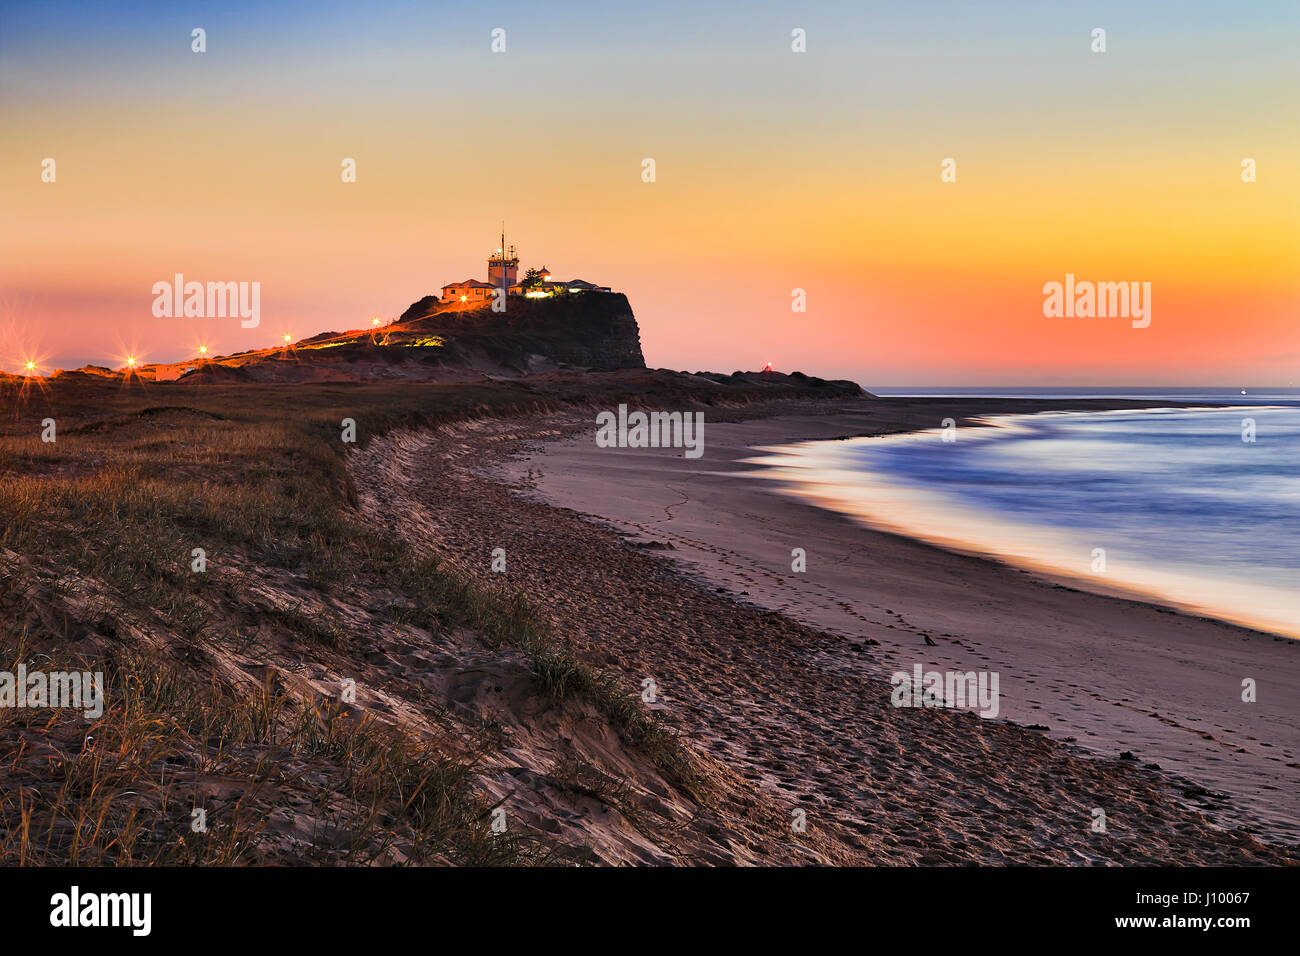 Avec l'herbe des dunes de sable à la plage de Nobbys nobbys head, et phare de Nobbys à Newcastle, NSW, au lever du soleil orange colorés. Banque D'Images